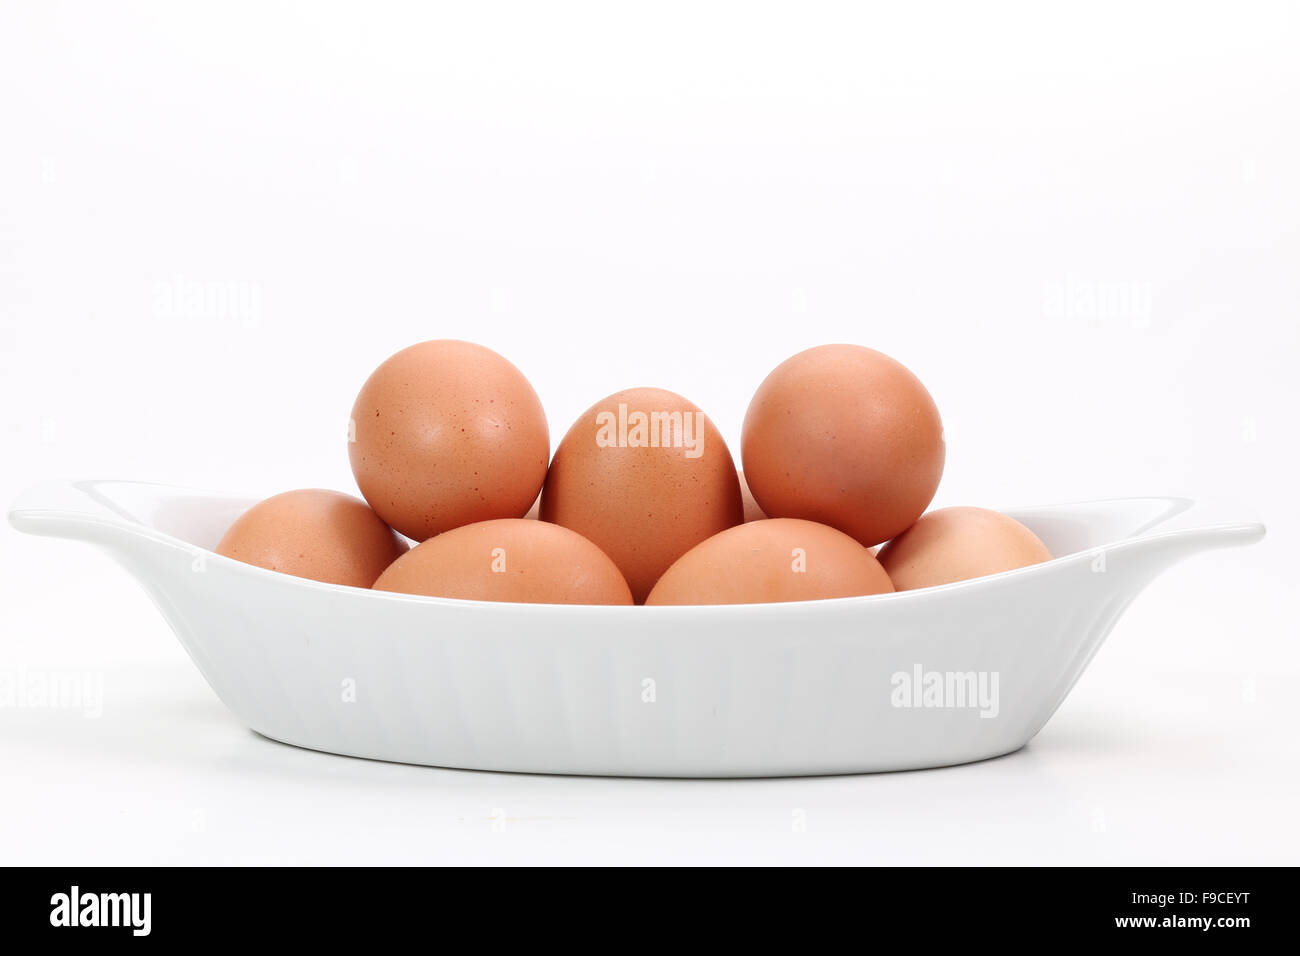 Las yemas de huevo y huevos enteros almacenan cantidades importantes de proteínas y la colina Foto de stock